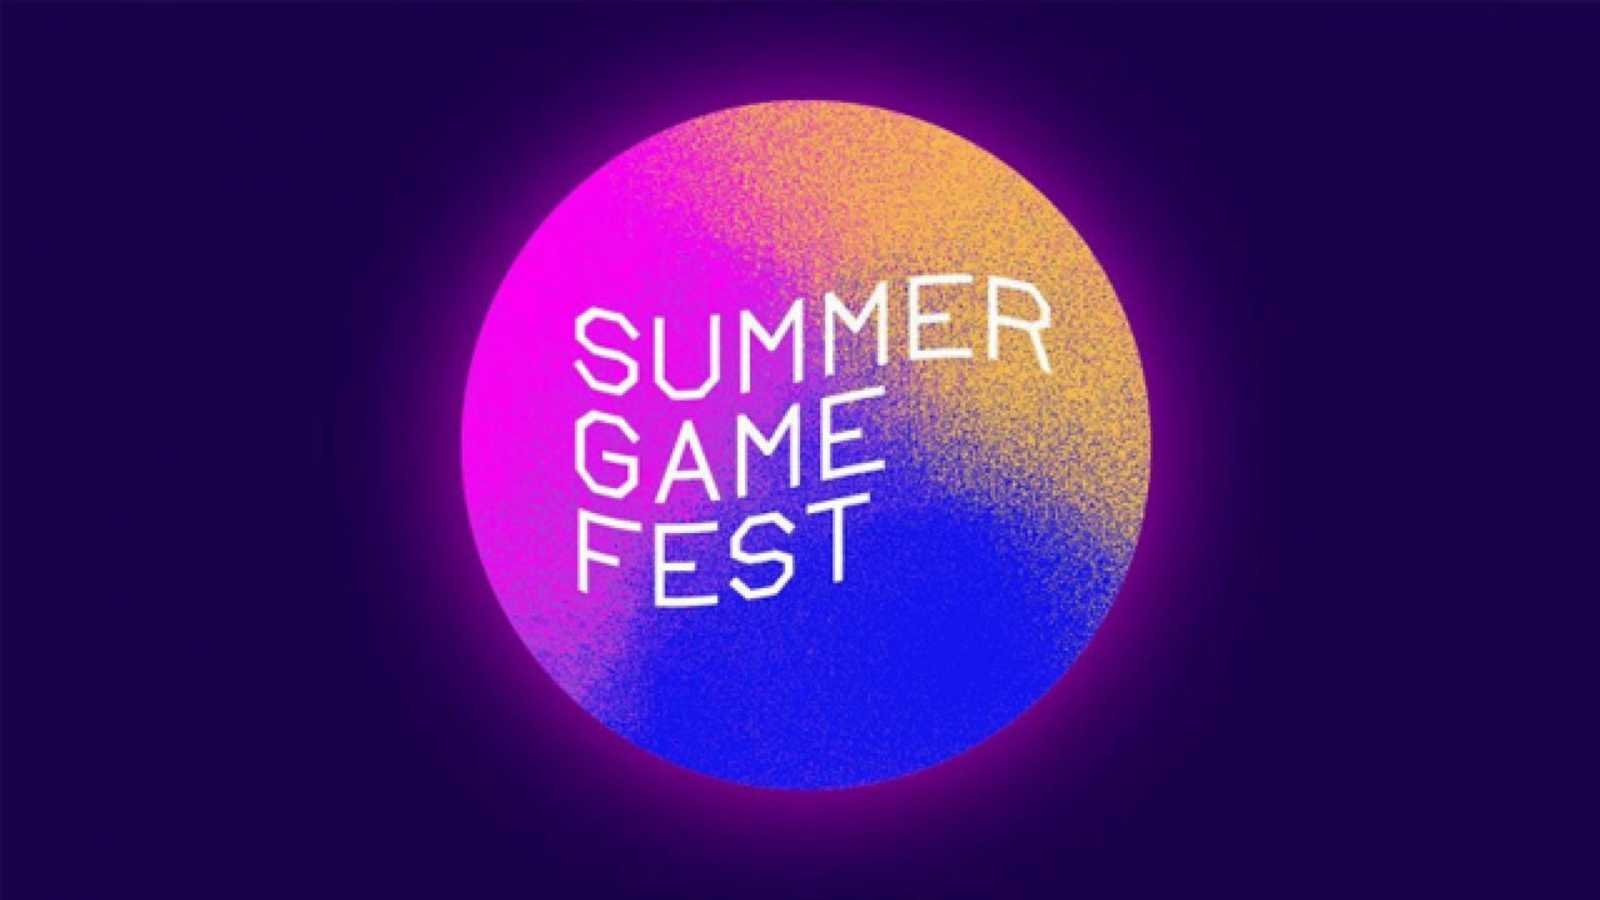 Letošní Summer Game Fest nabídne tři až čtyři velká oznámení, slibuje Geoff Keighley